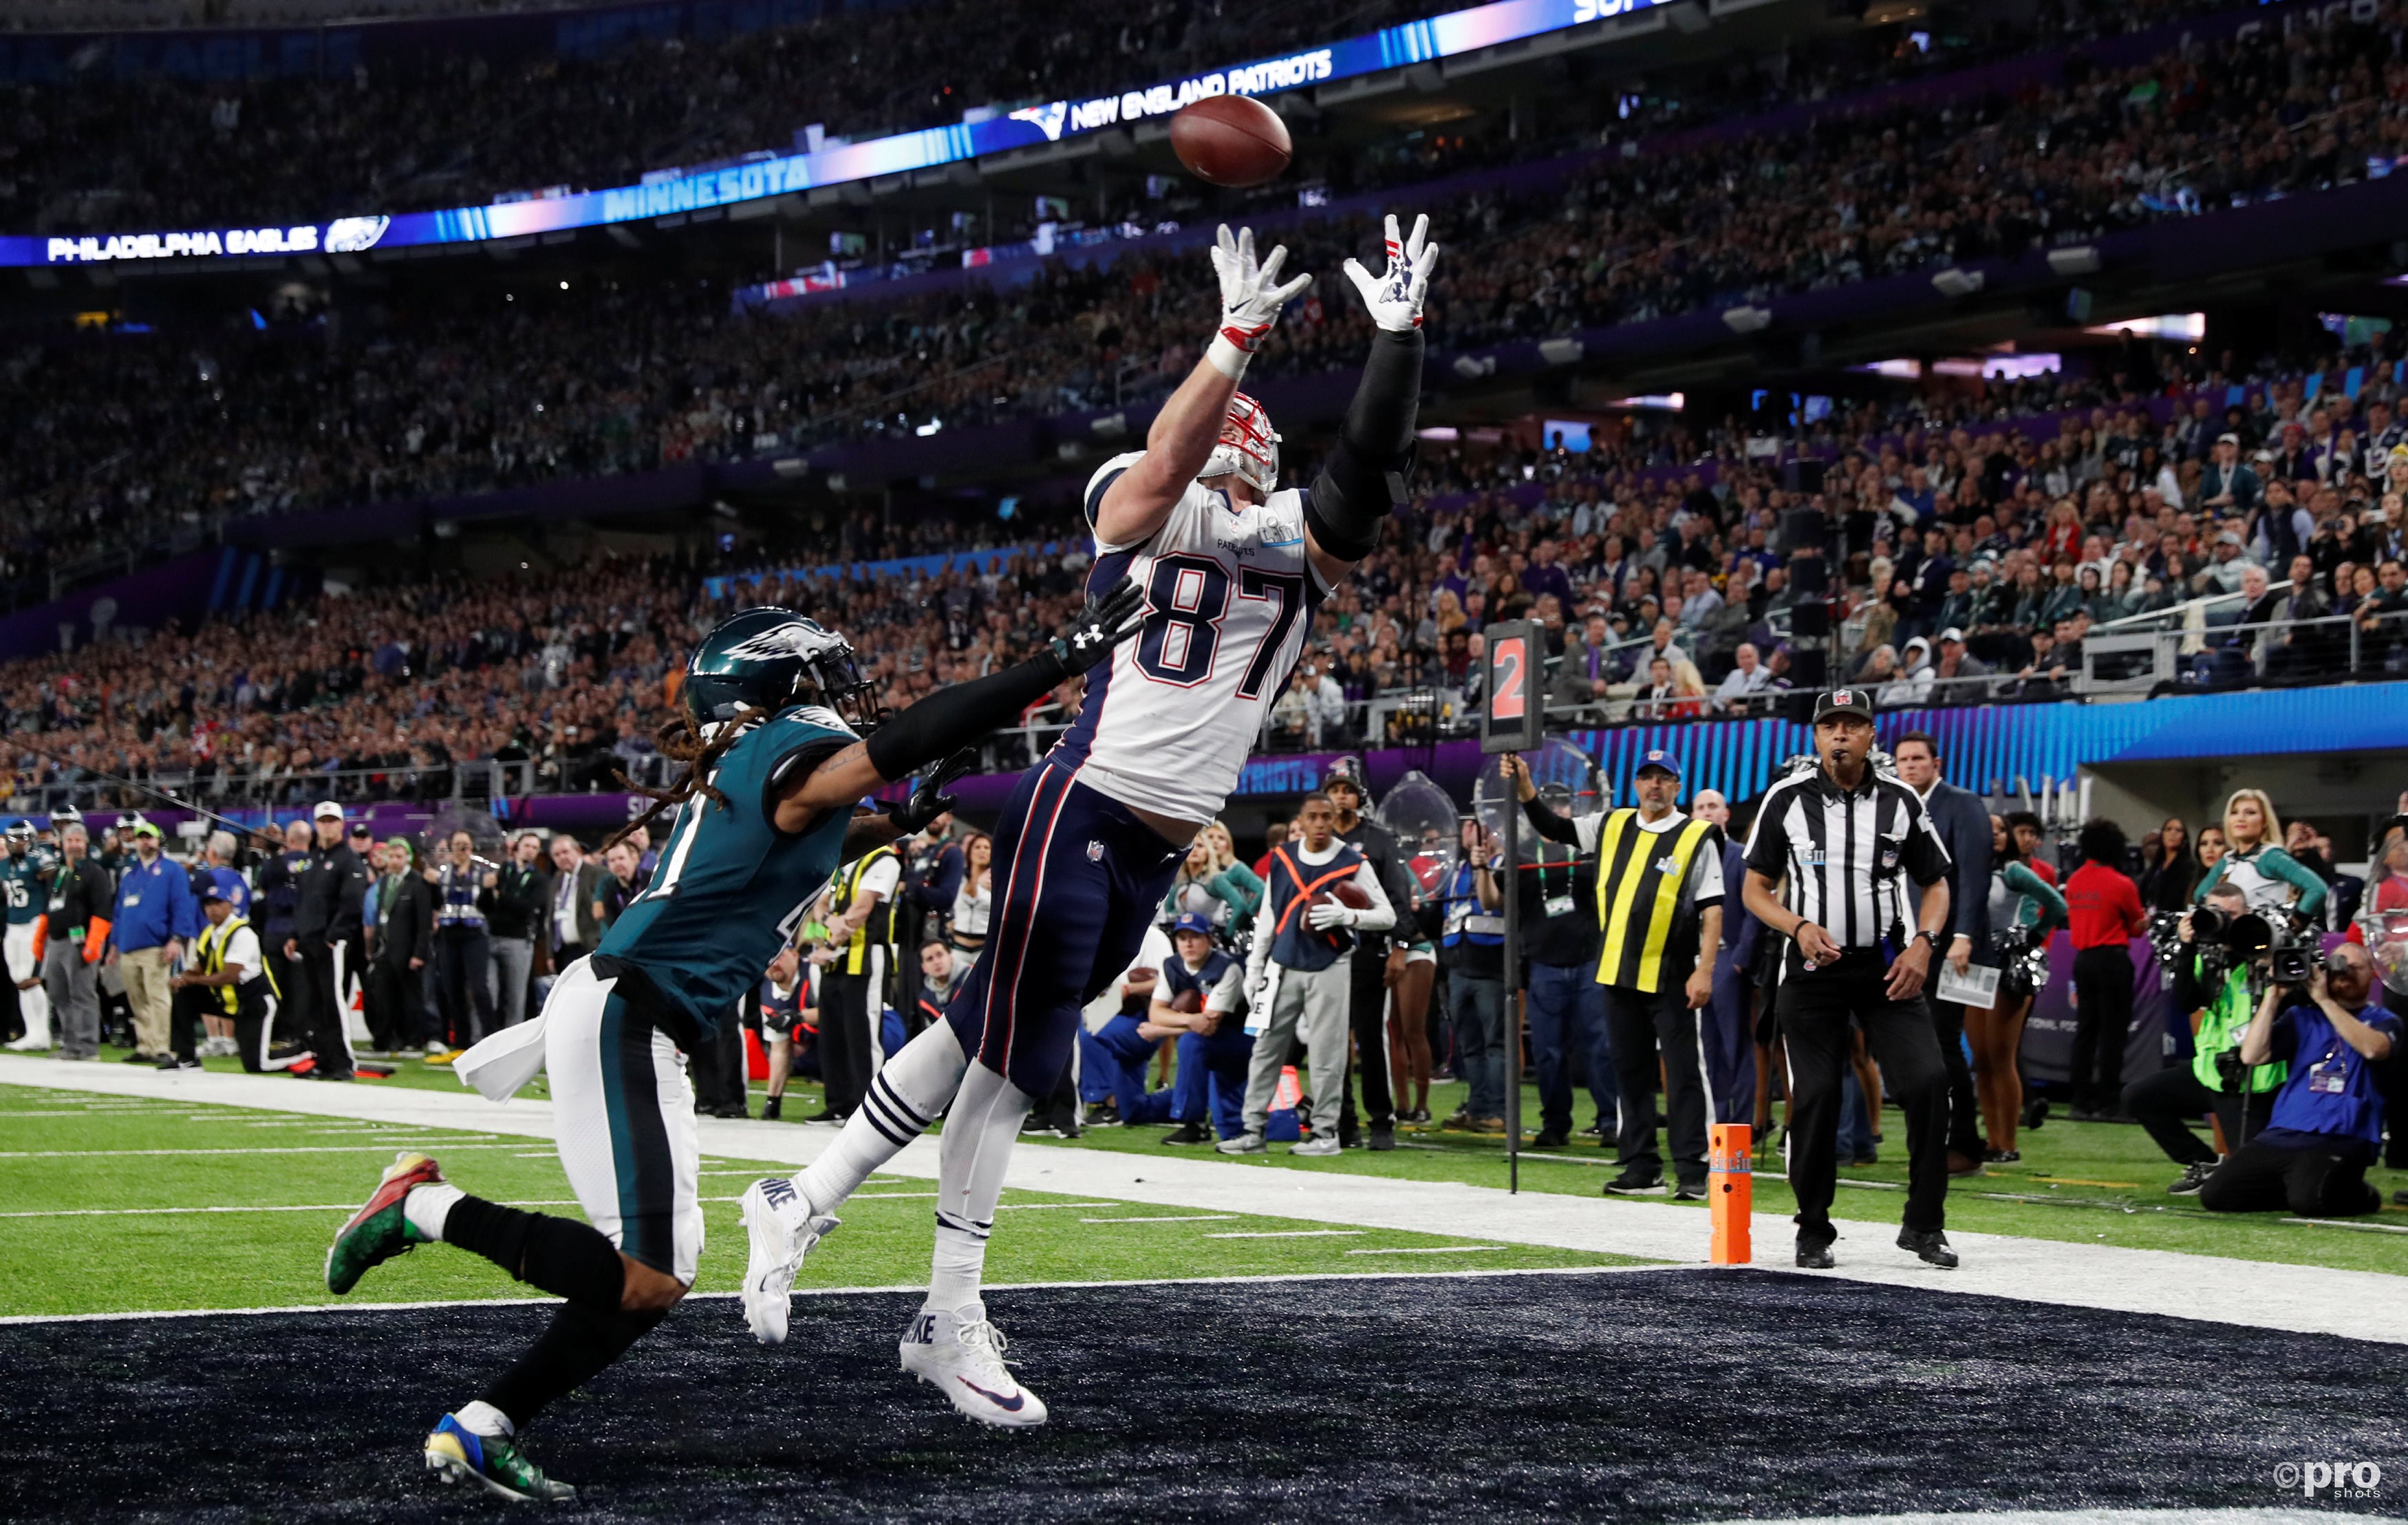 New England Patriots' Rob Gronkowski vangt de bal in de endzone na een mooie loopactie (Pro Shots / Action Images)